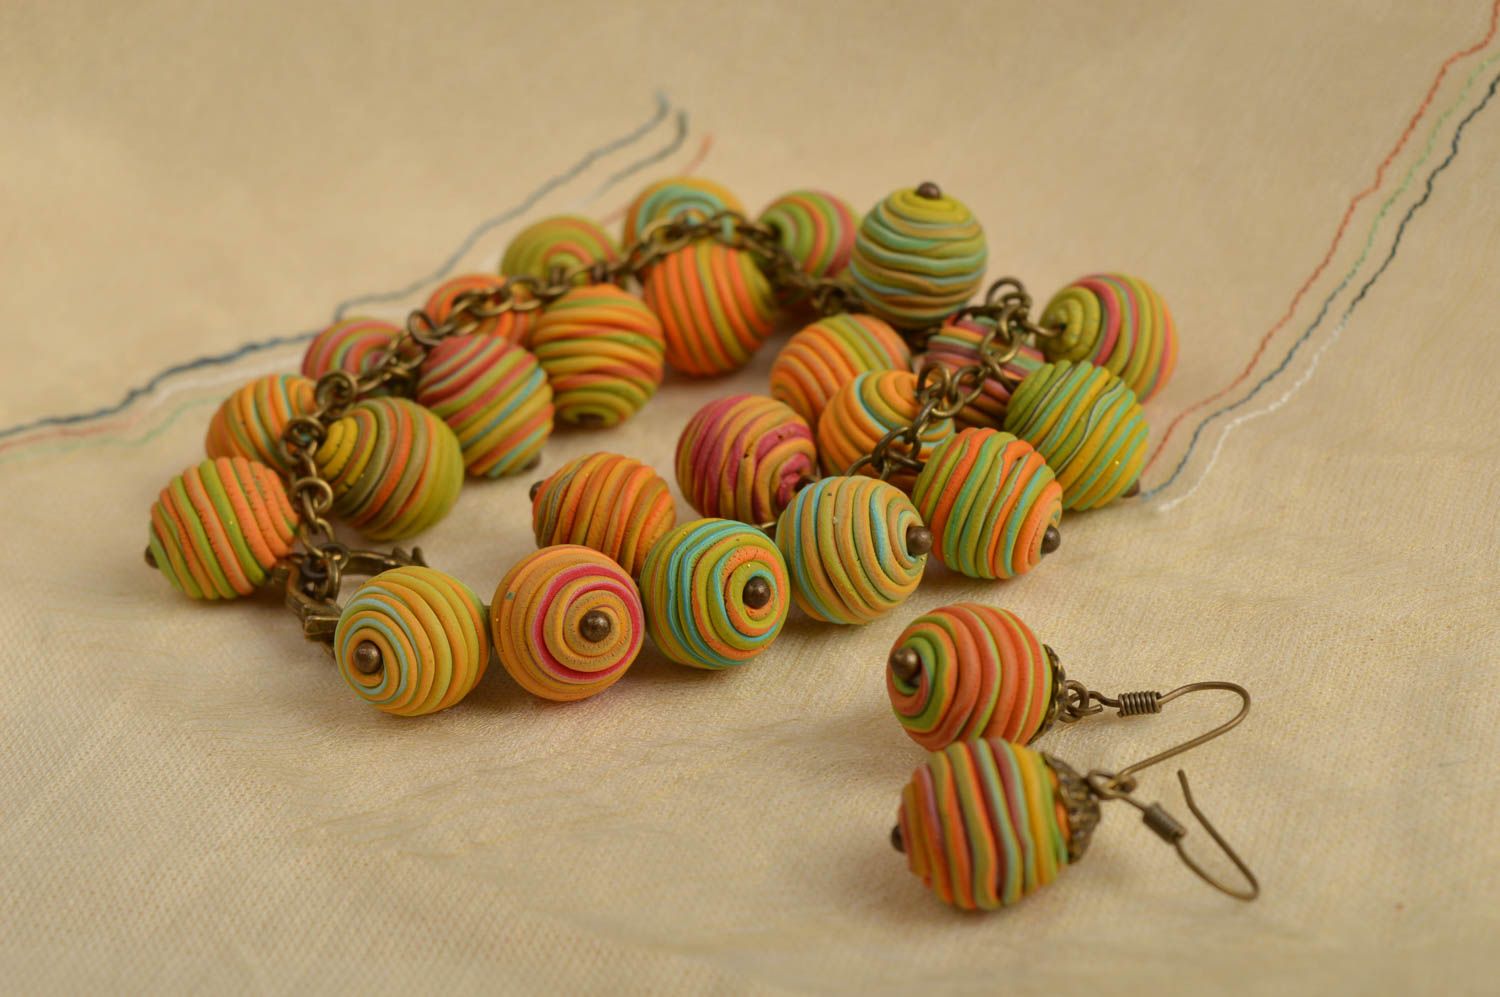 Wrist bracelet fashion earrings polymer clay jewelry with beads women jewelry  photo 1